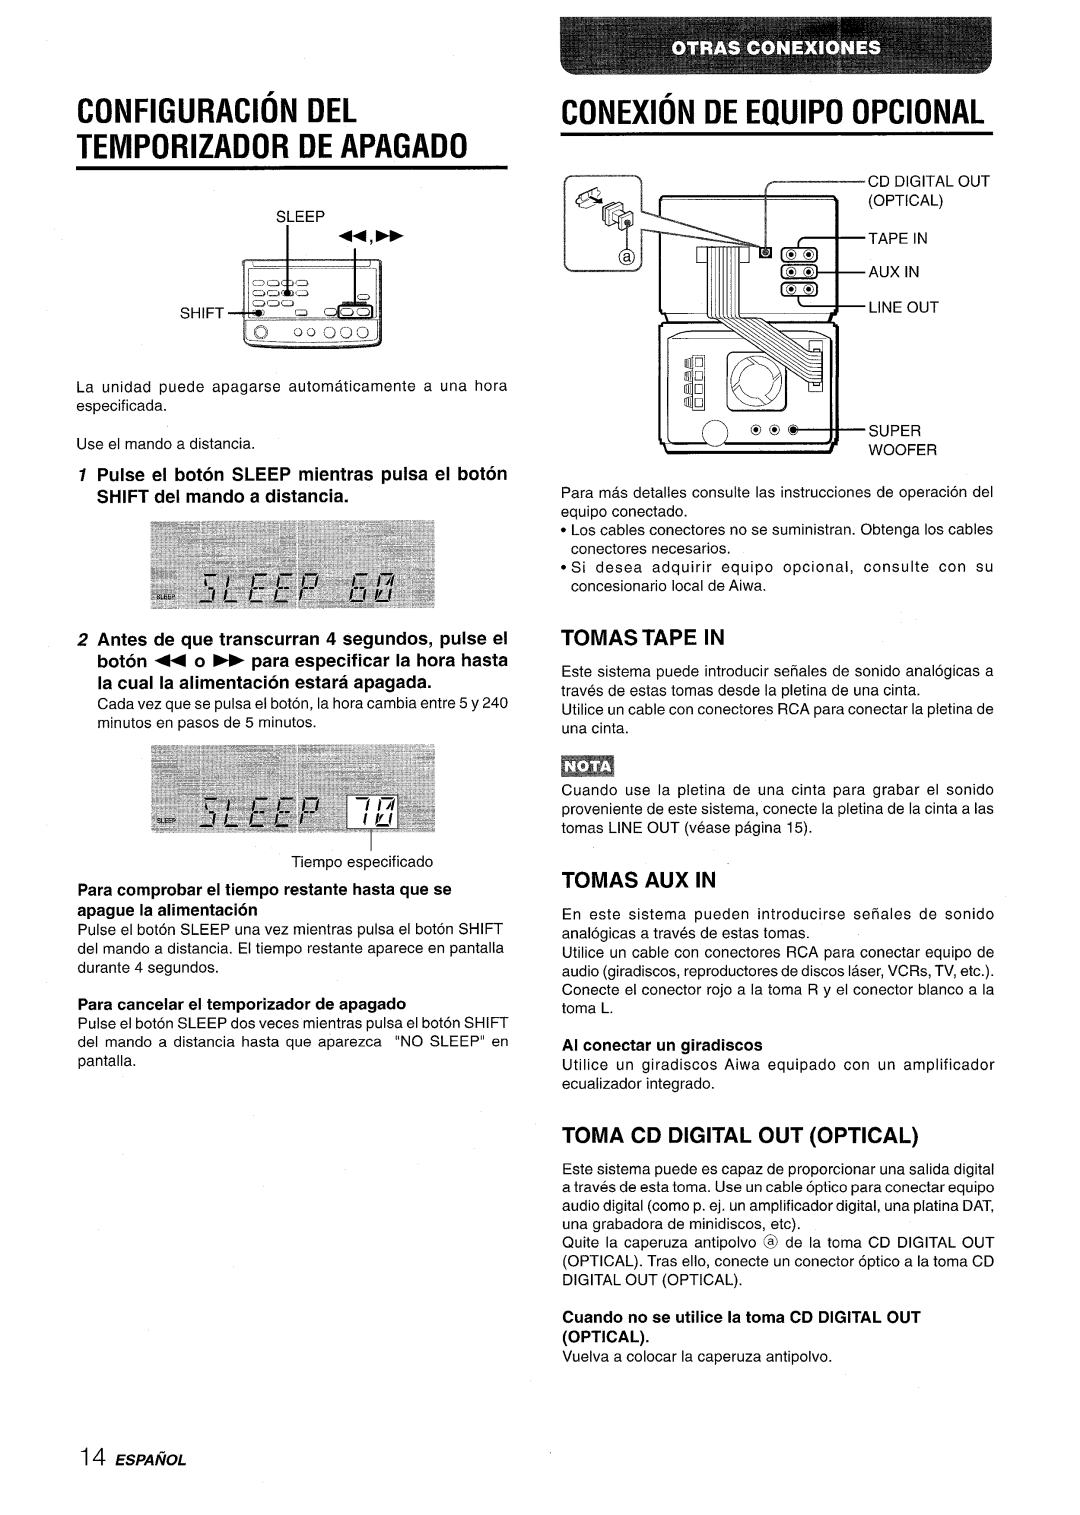 Aiwa XR-M70 manual Configuration Del Temporizador De Apagado, Conexion De Equipo Opcional, Tomas Tape In, Tomas Aux In 